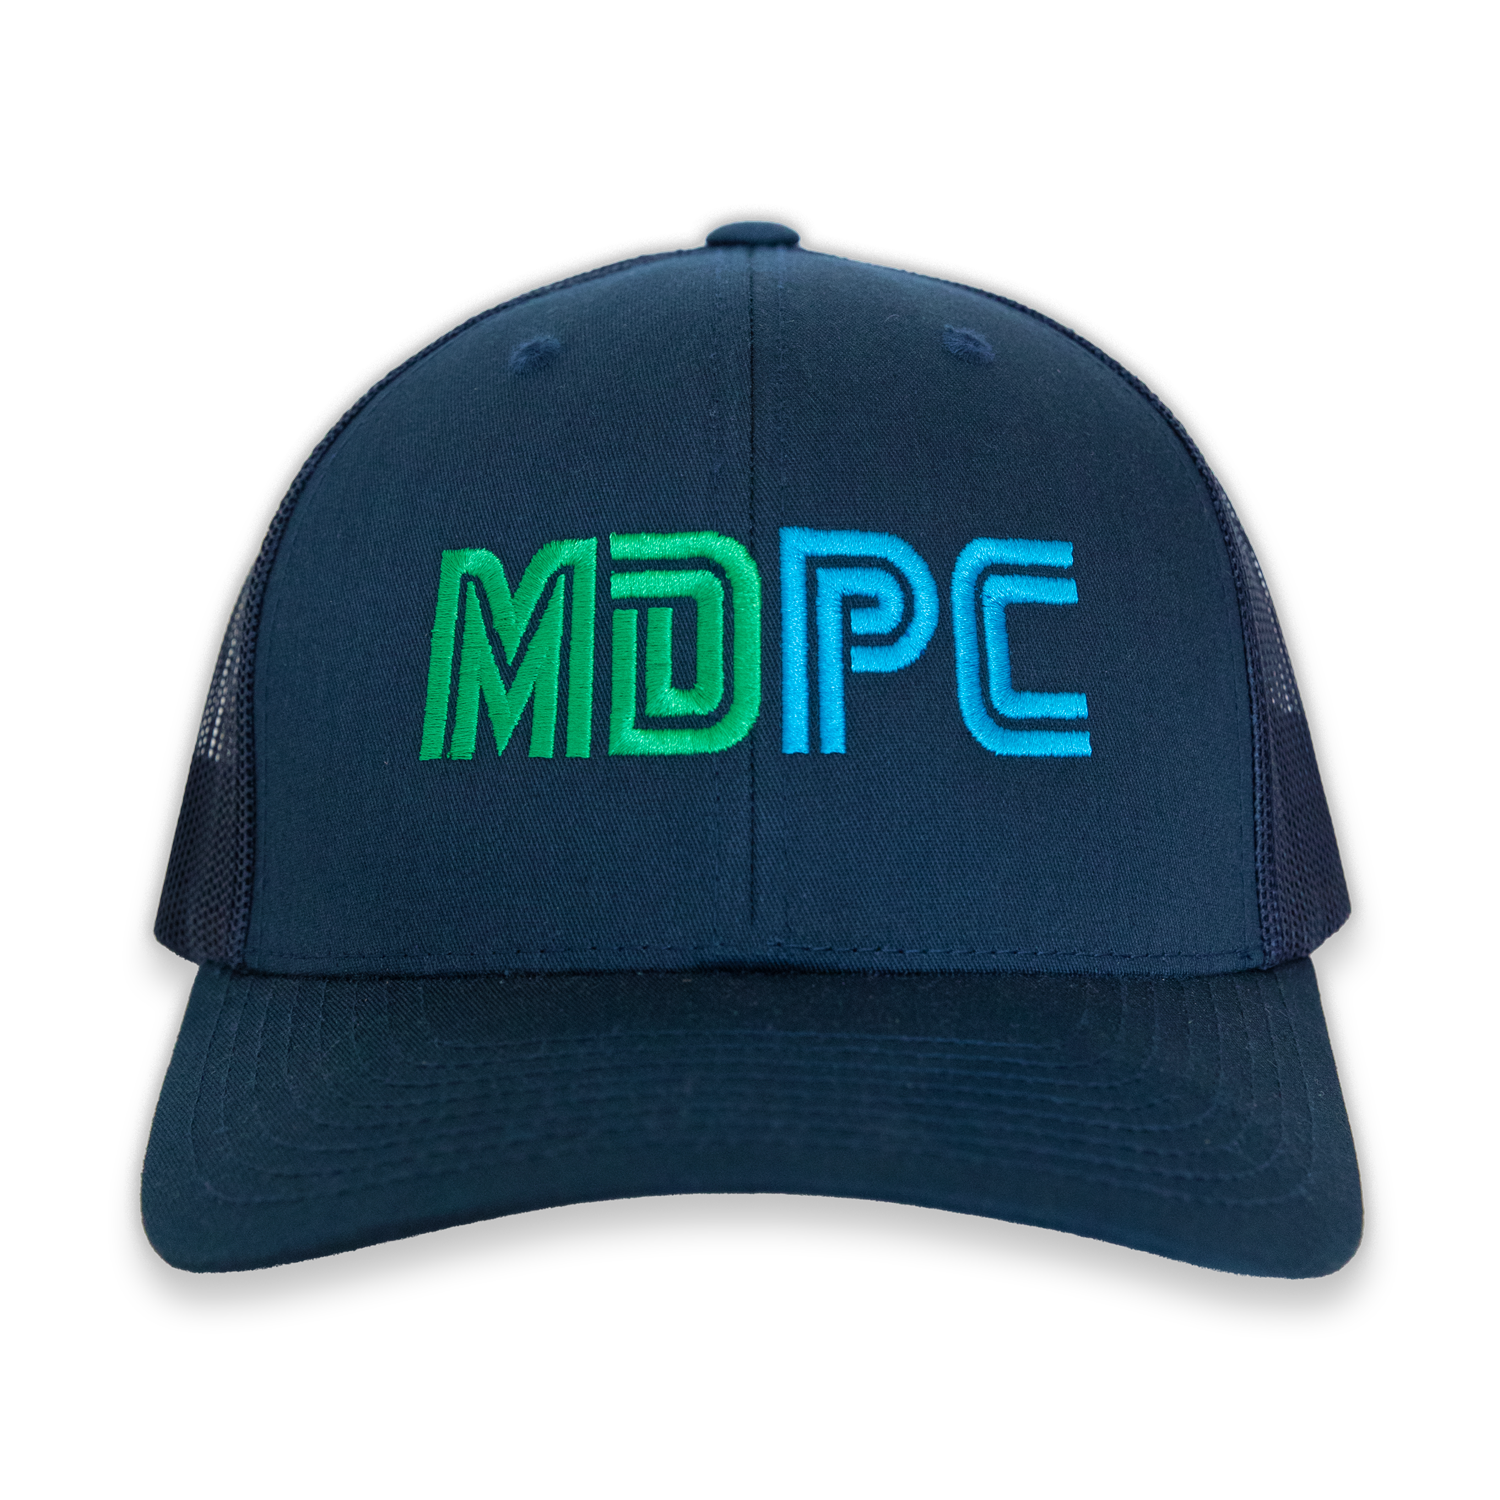 MDPC Navy Trucker Hat